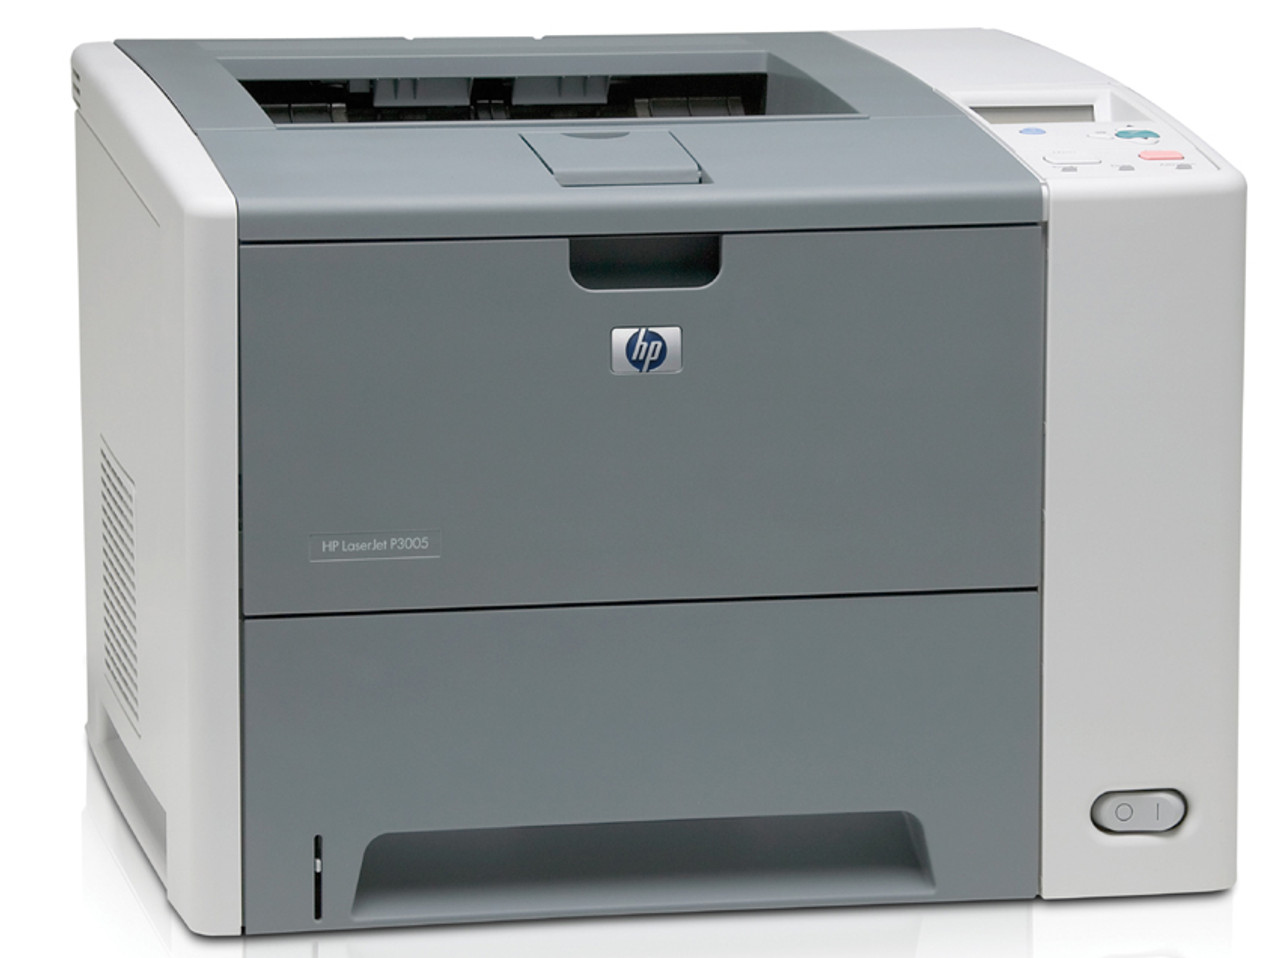 HP LaserJet P3005 - Q7812A - HP Laser Printer for sale